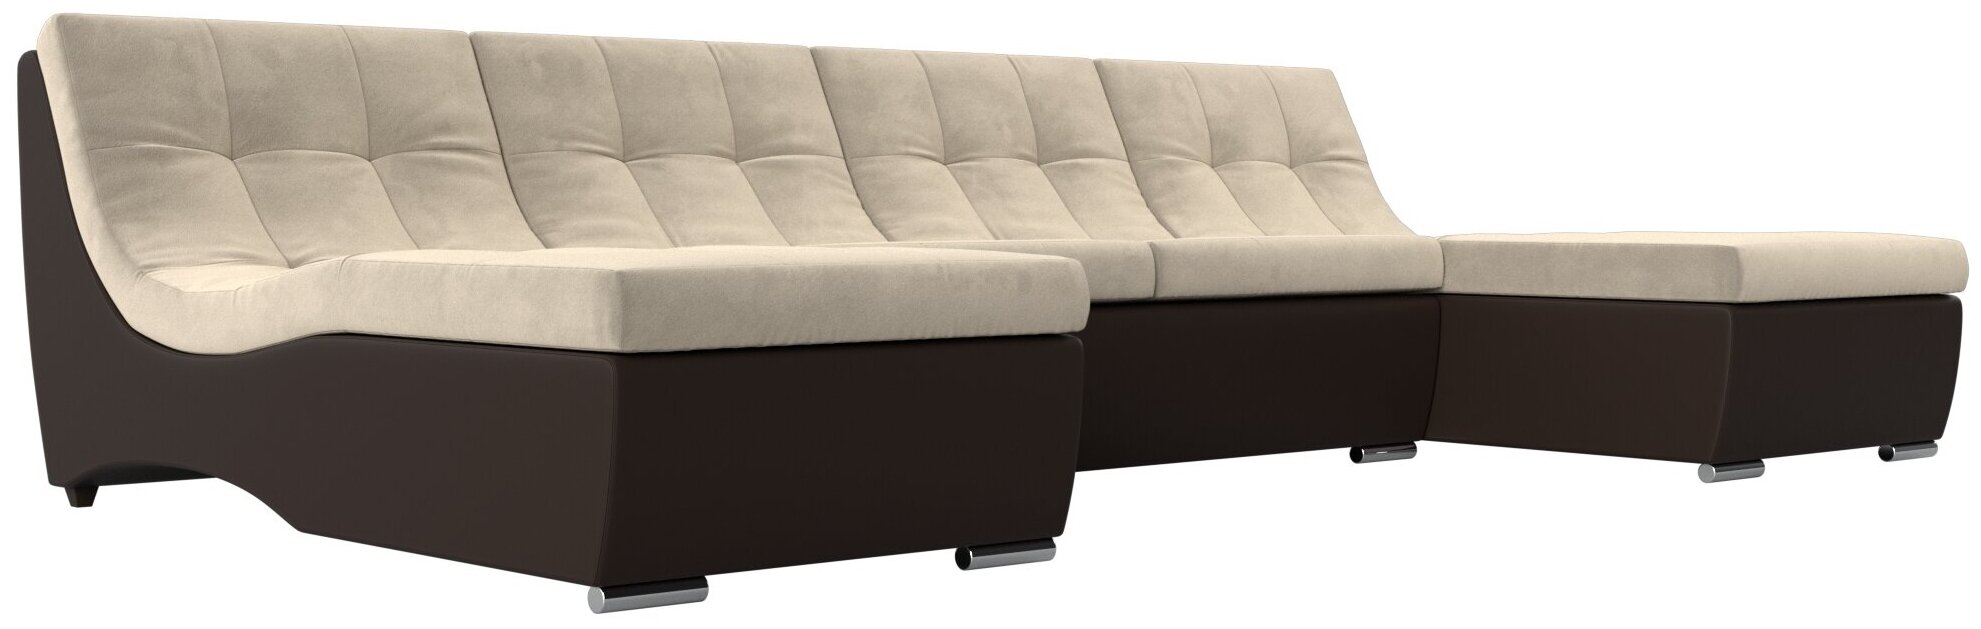 П-образный модульный диван Монреаль, Микровельвет, Модель 111555